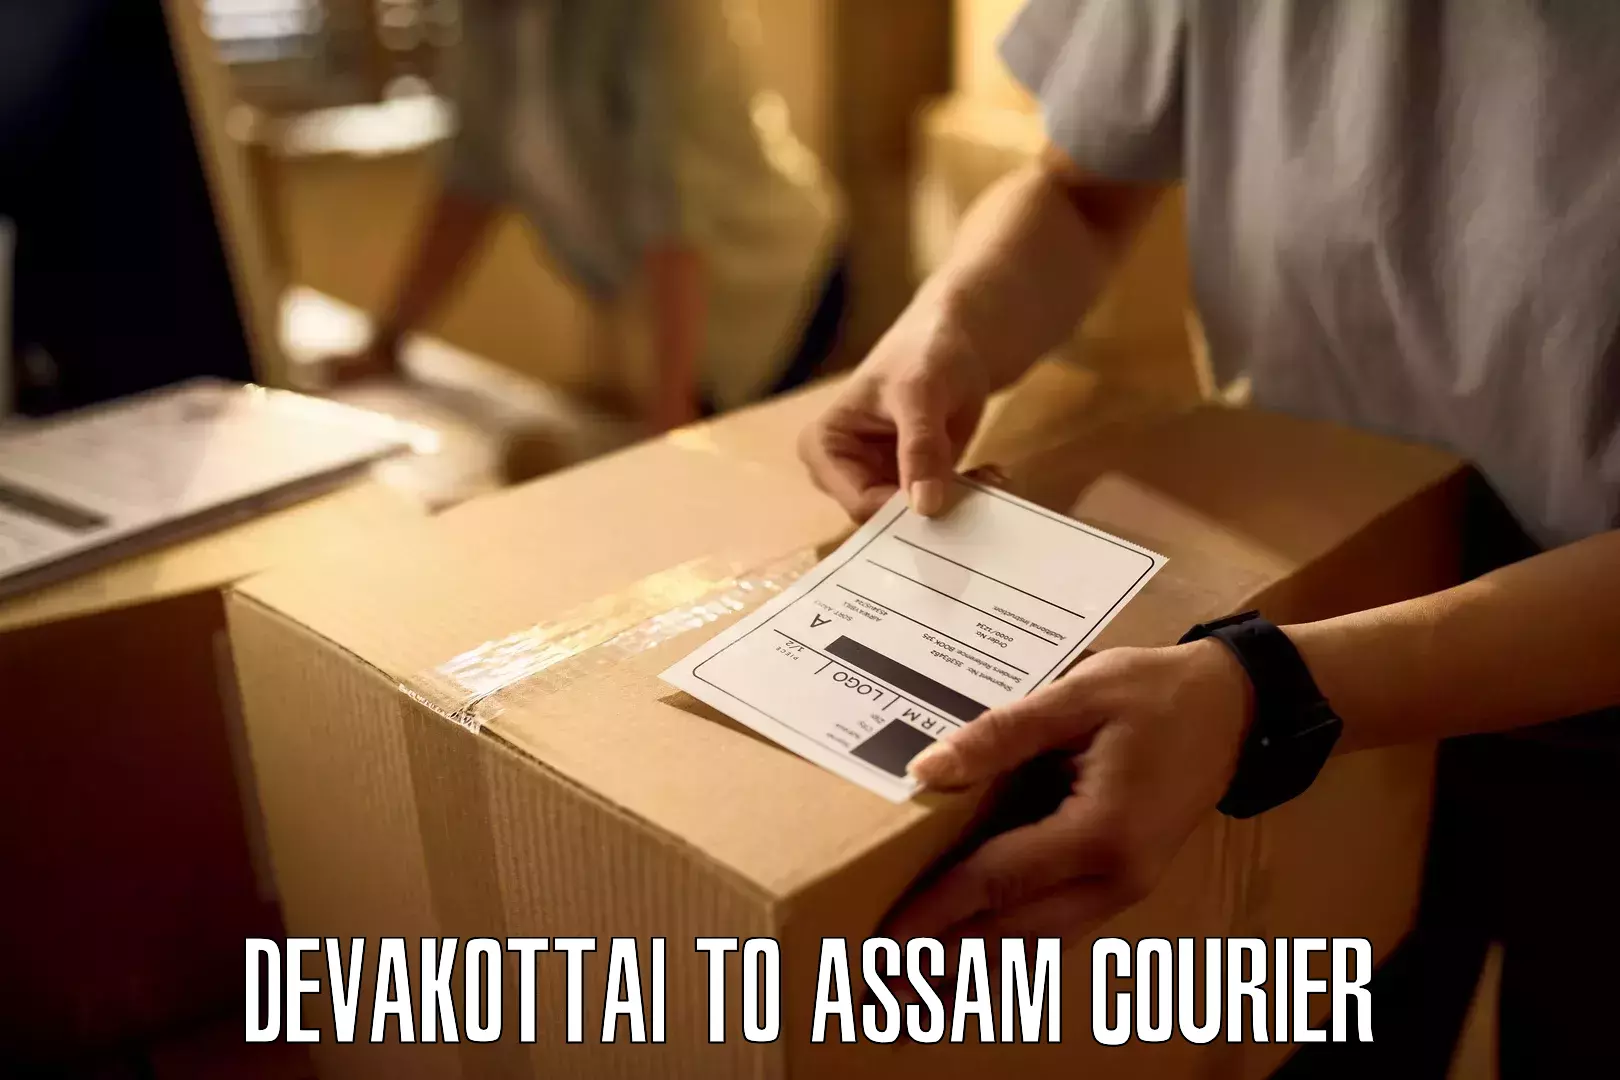 Cargo delivery service Devakottai to Silchar